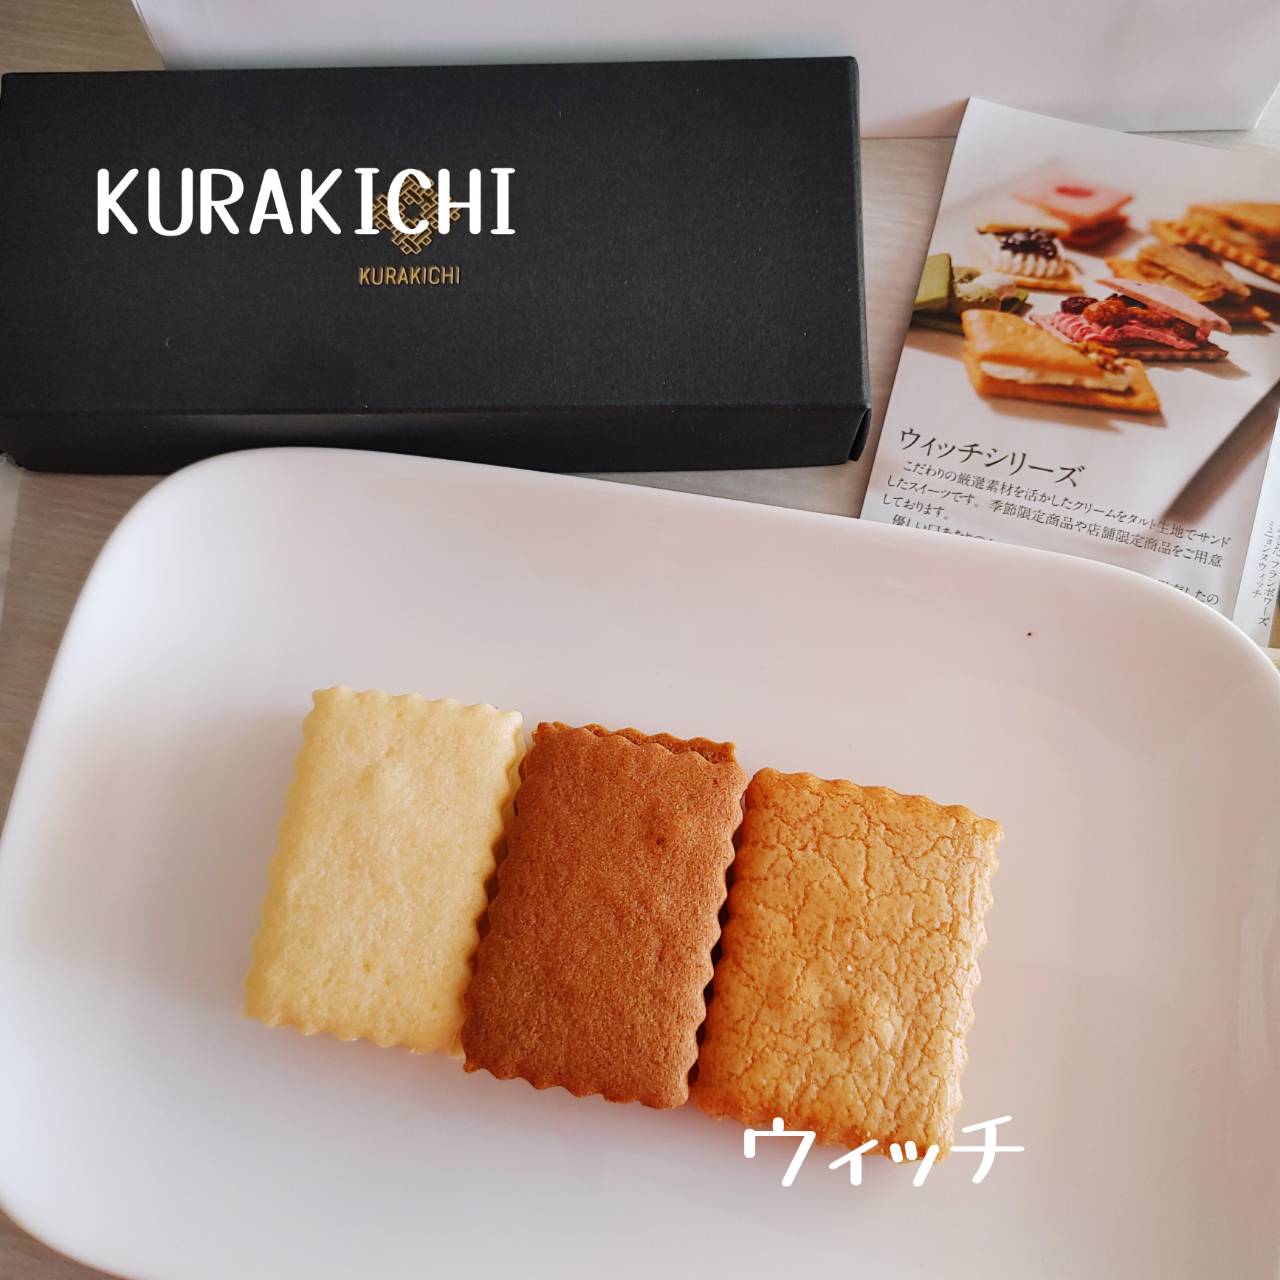 KURAKICHI【ウィッチシリーズ】-5